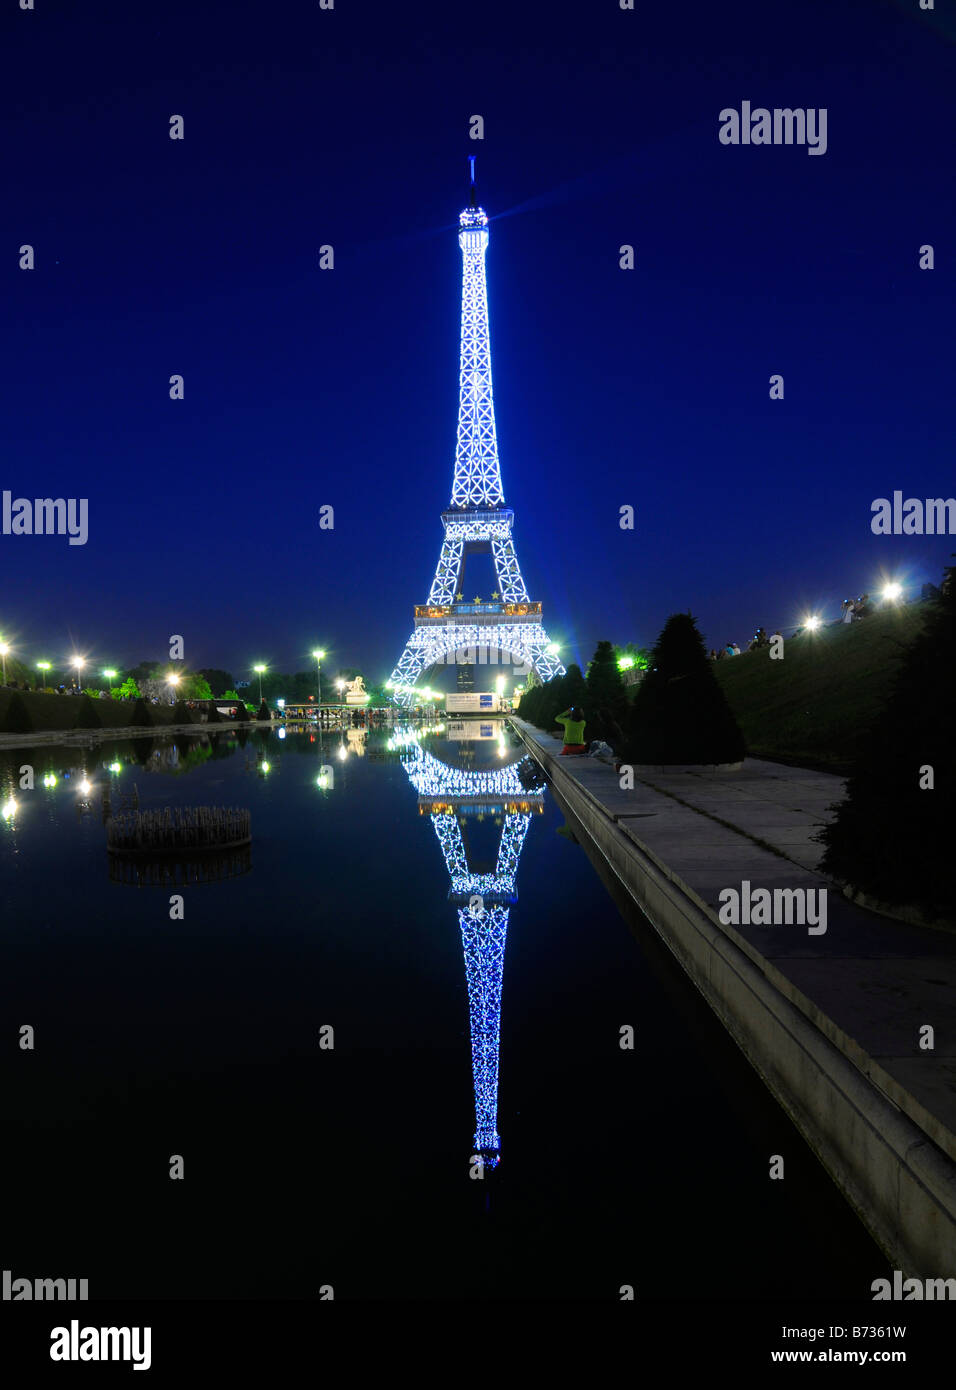 La Tour Eiffel illuminée la nuit et se reflètent dans un étang, à Paris, France. Banque D'Images